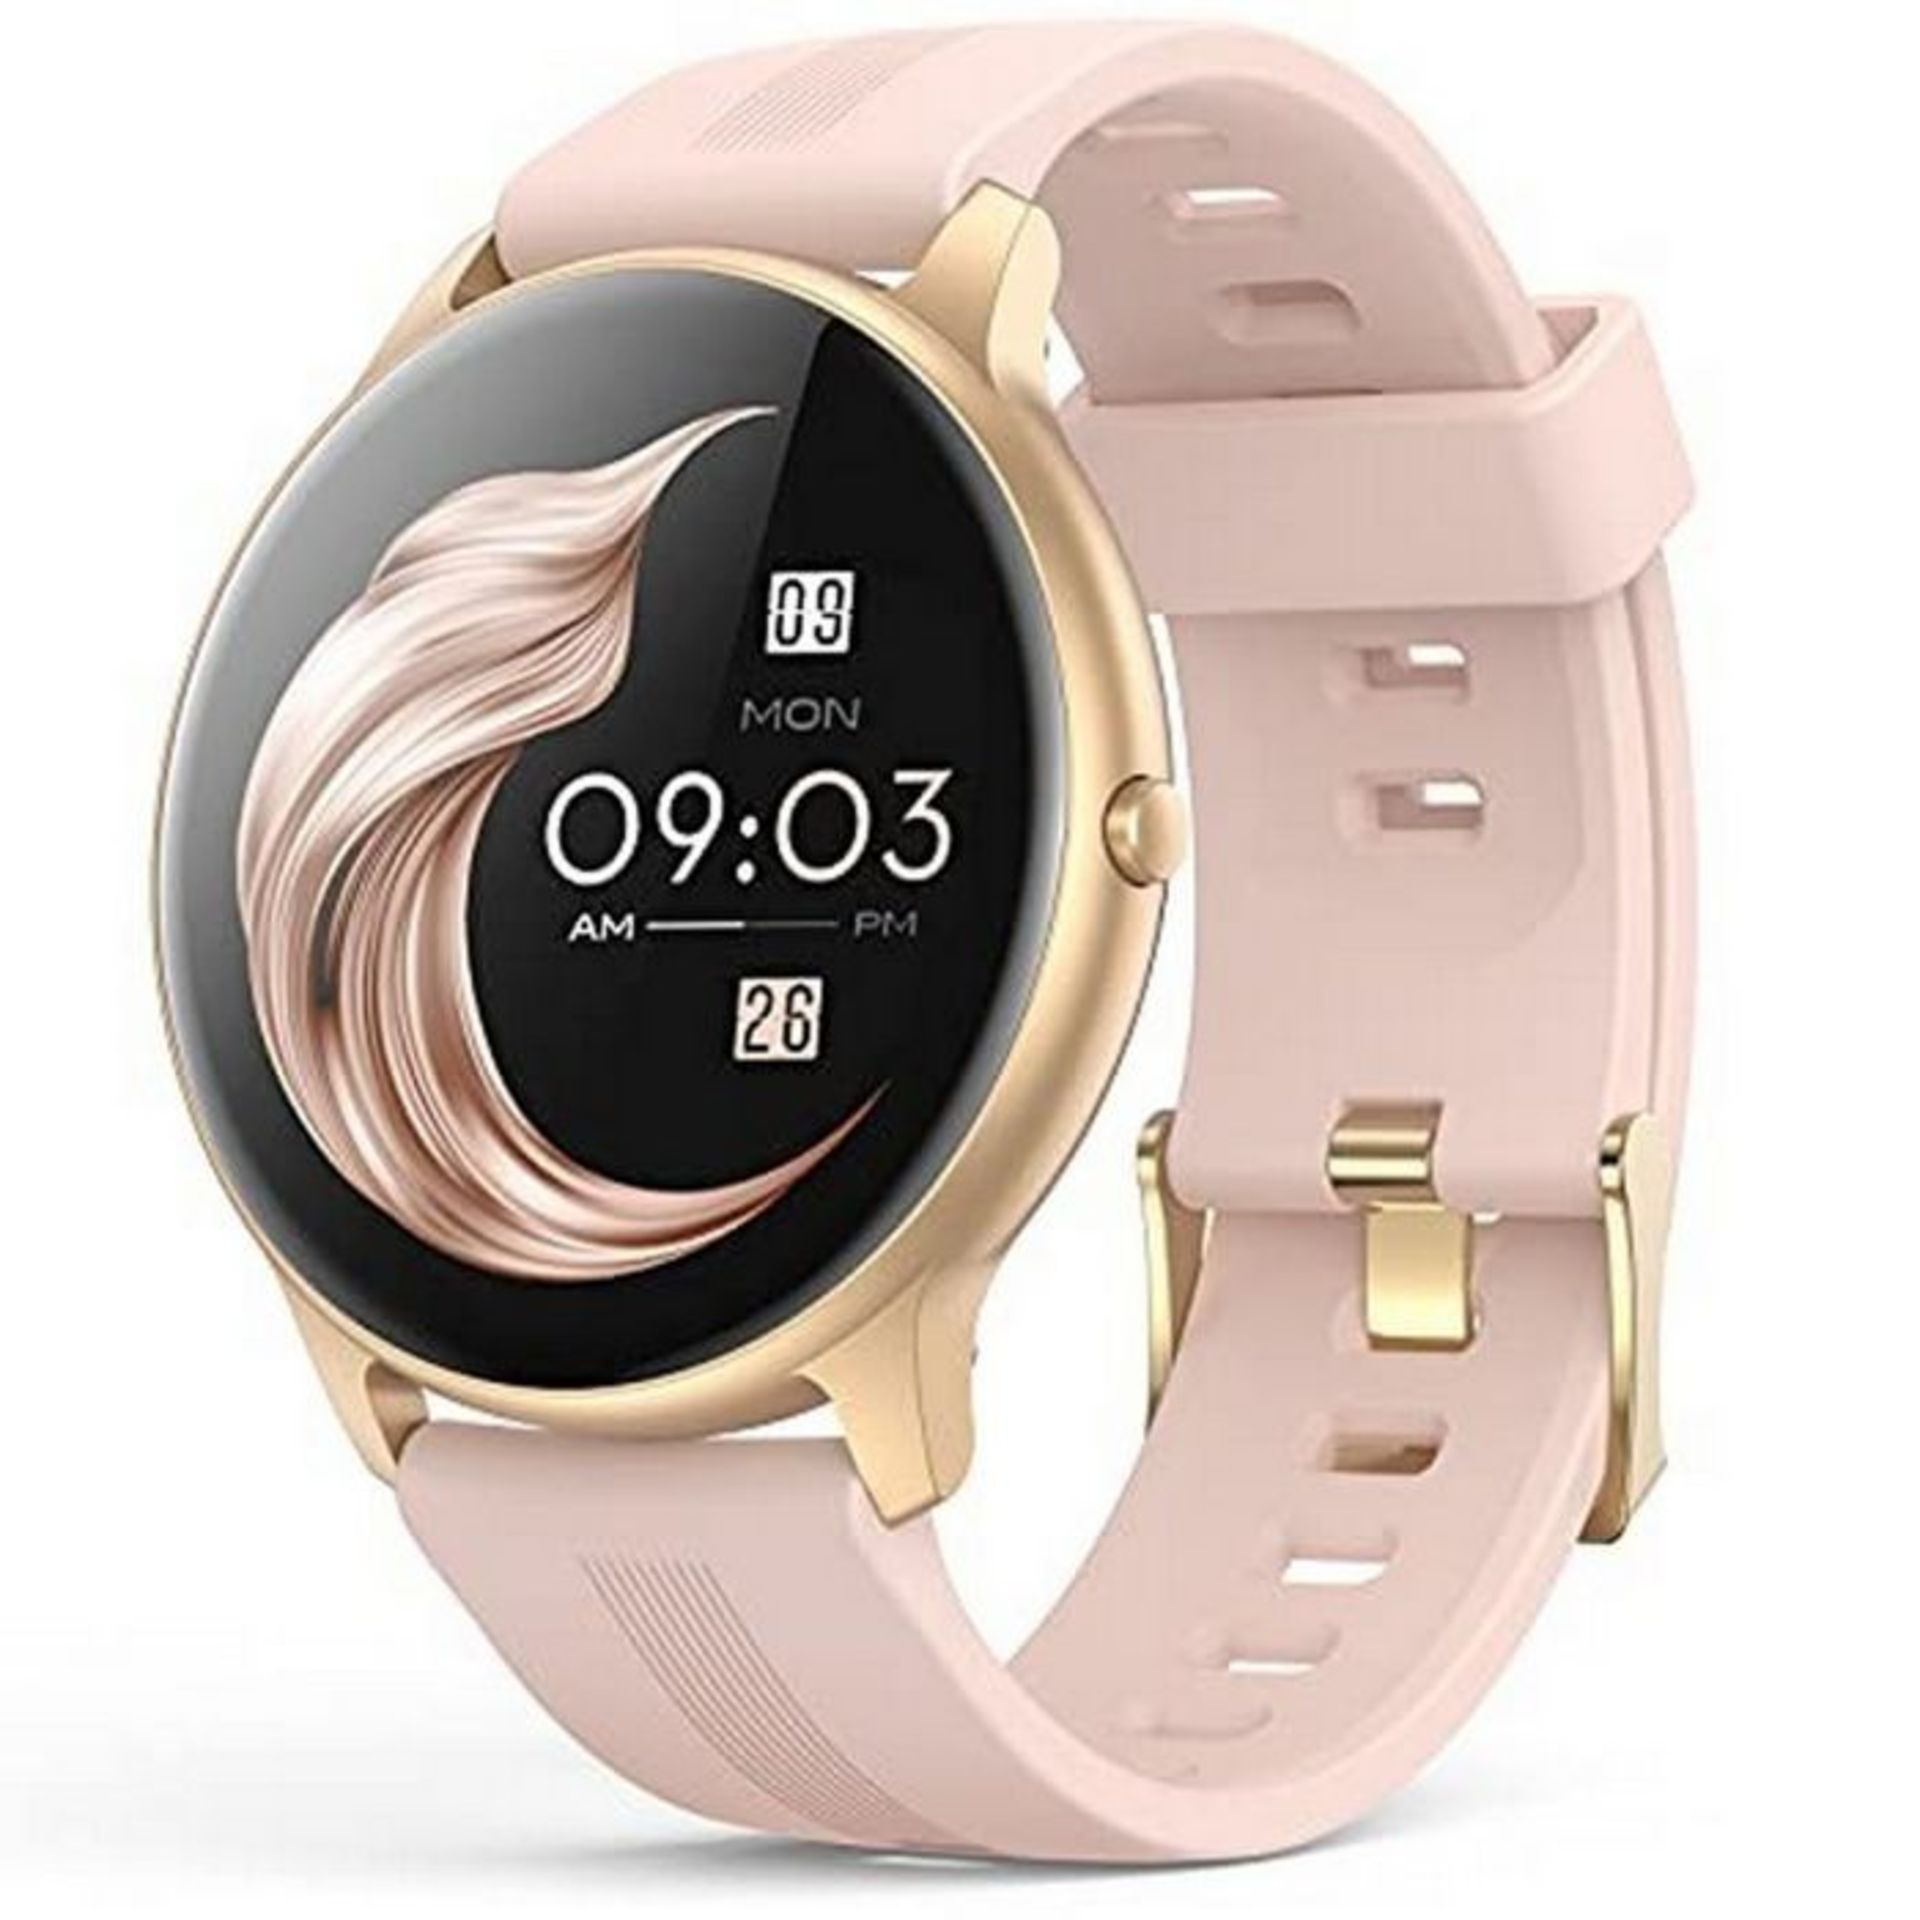 RRP £33.71 AGPTEK Smart Watch for Women - Image 2 of 4